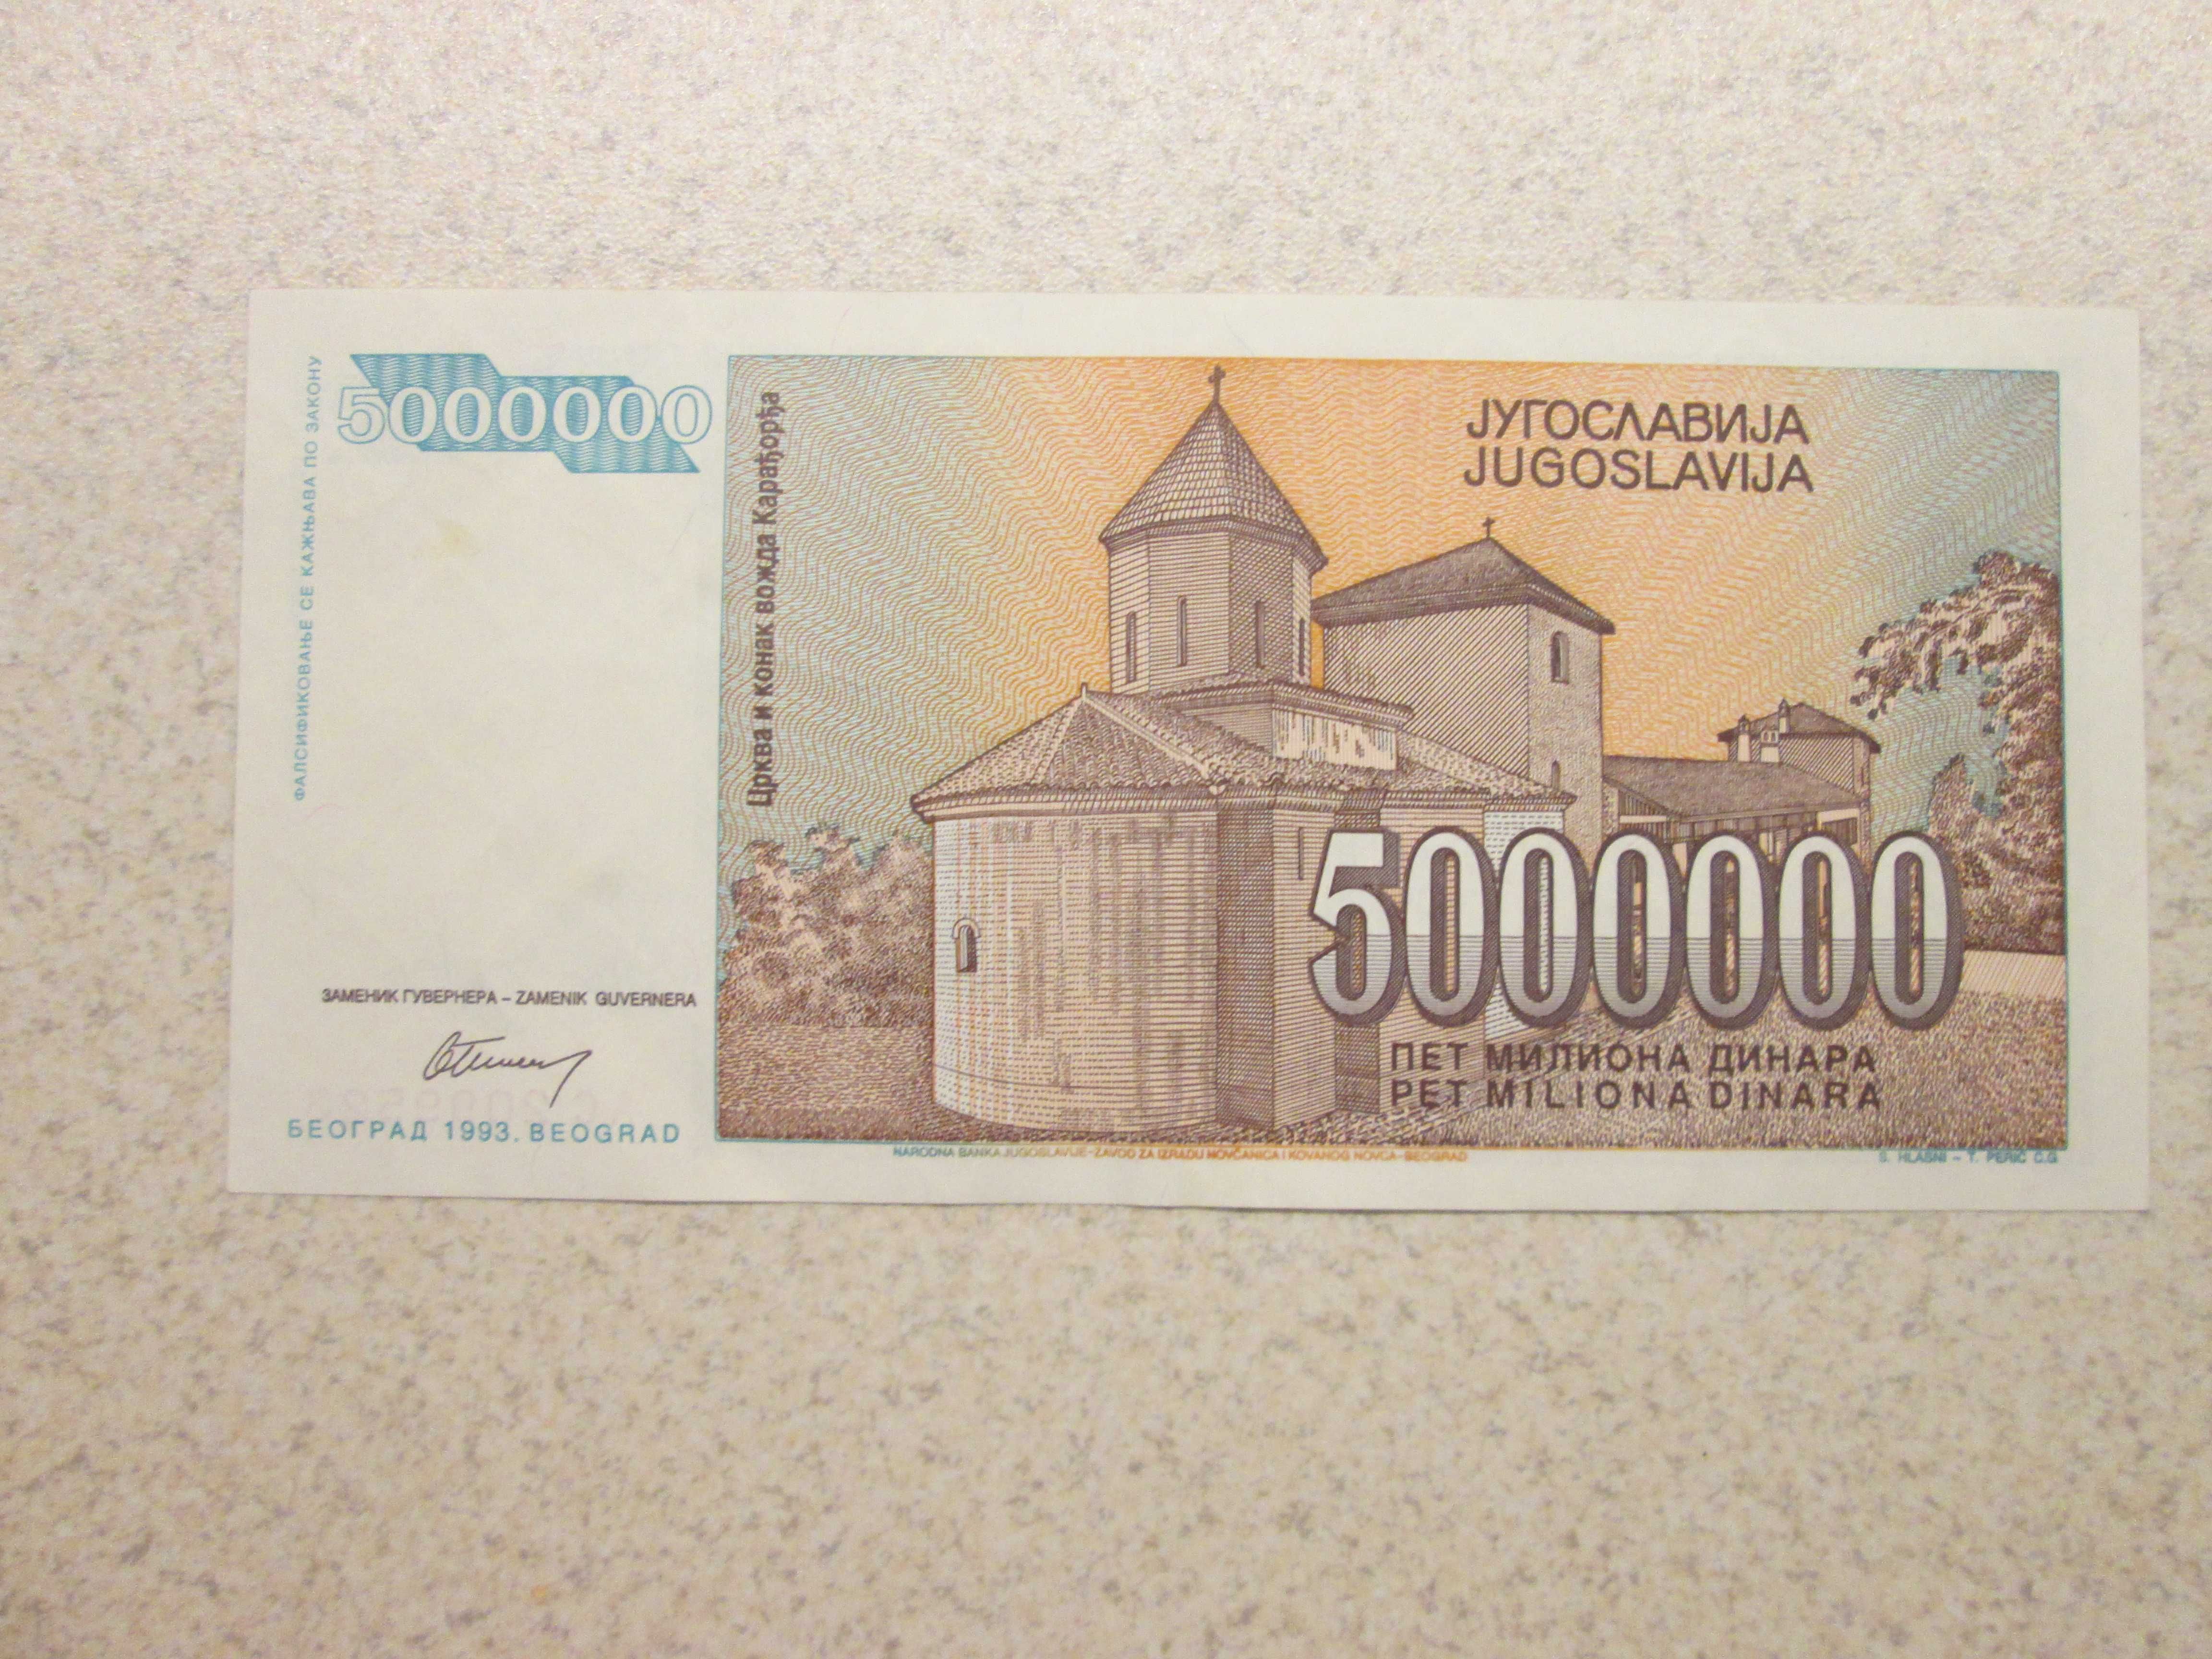 Banknot 5 mln dinarów jugosławia